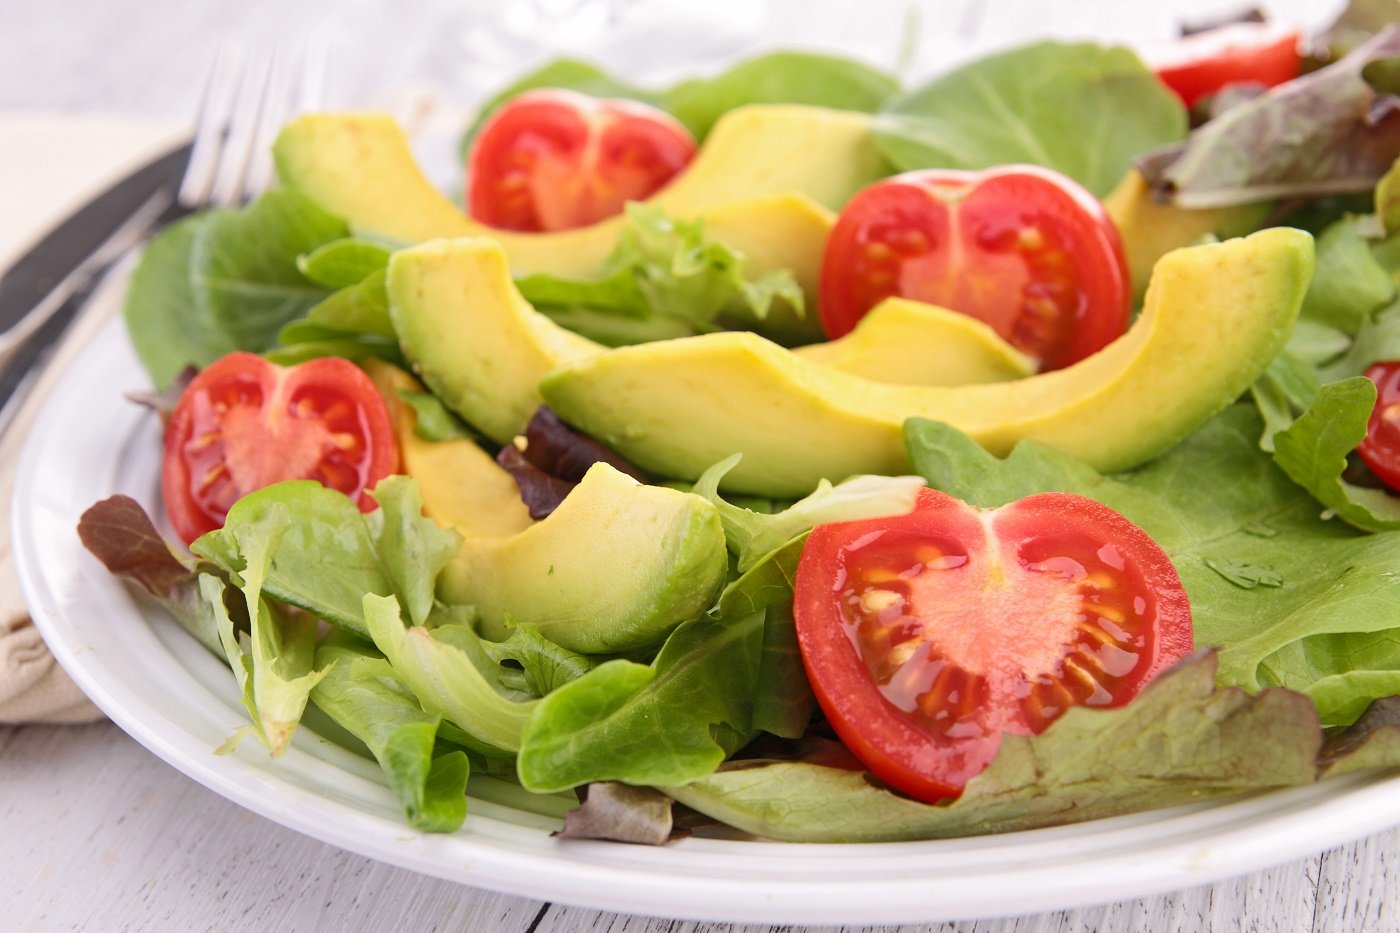 Salad bơ rau trộn giảm cân có hiệu quả không?
